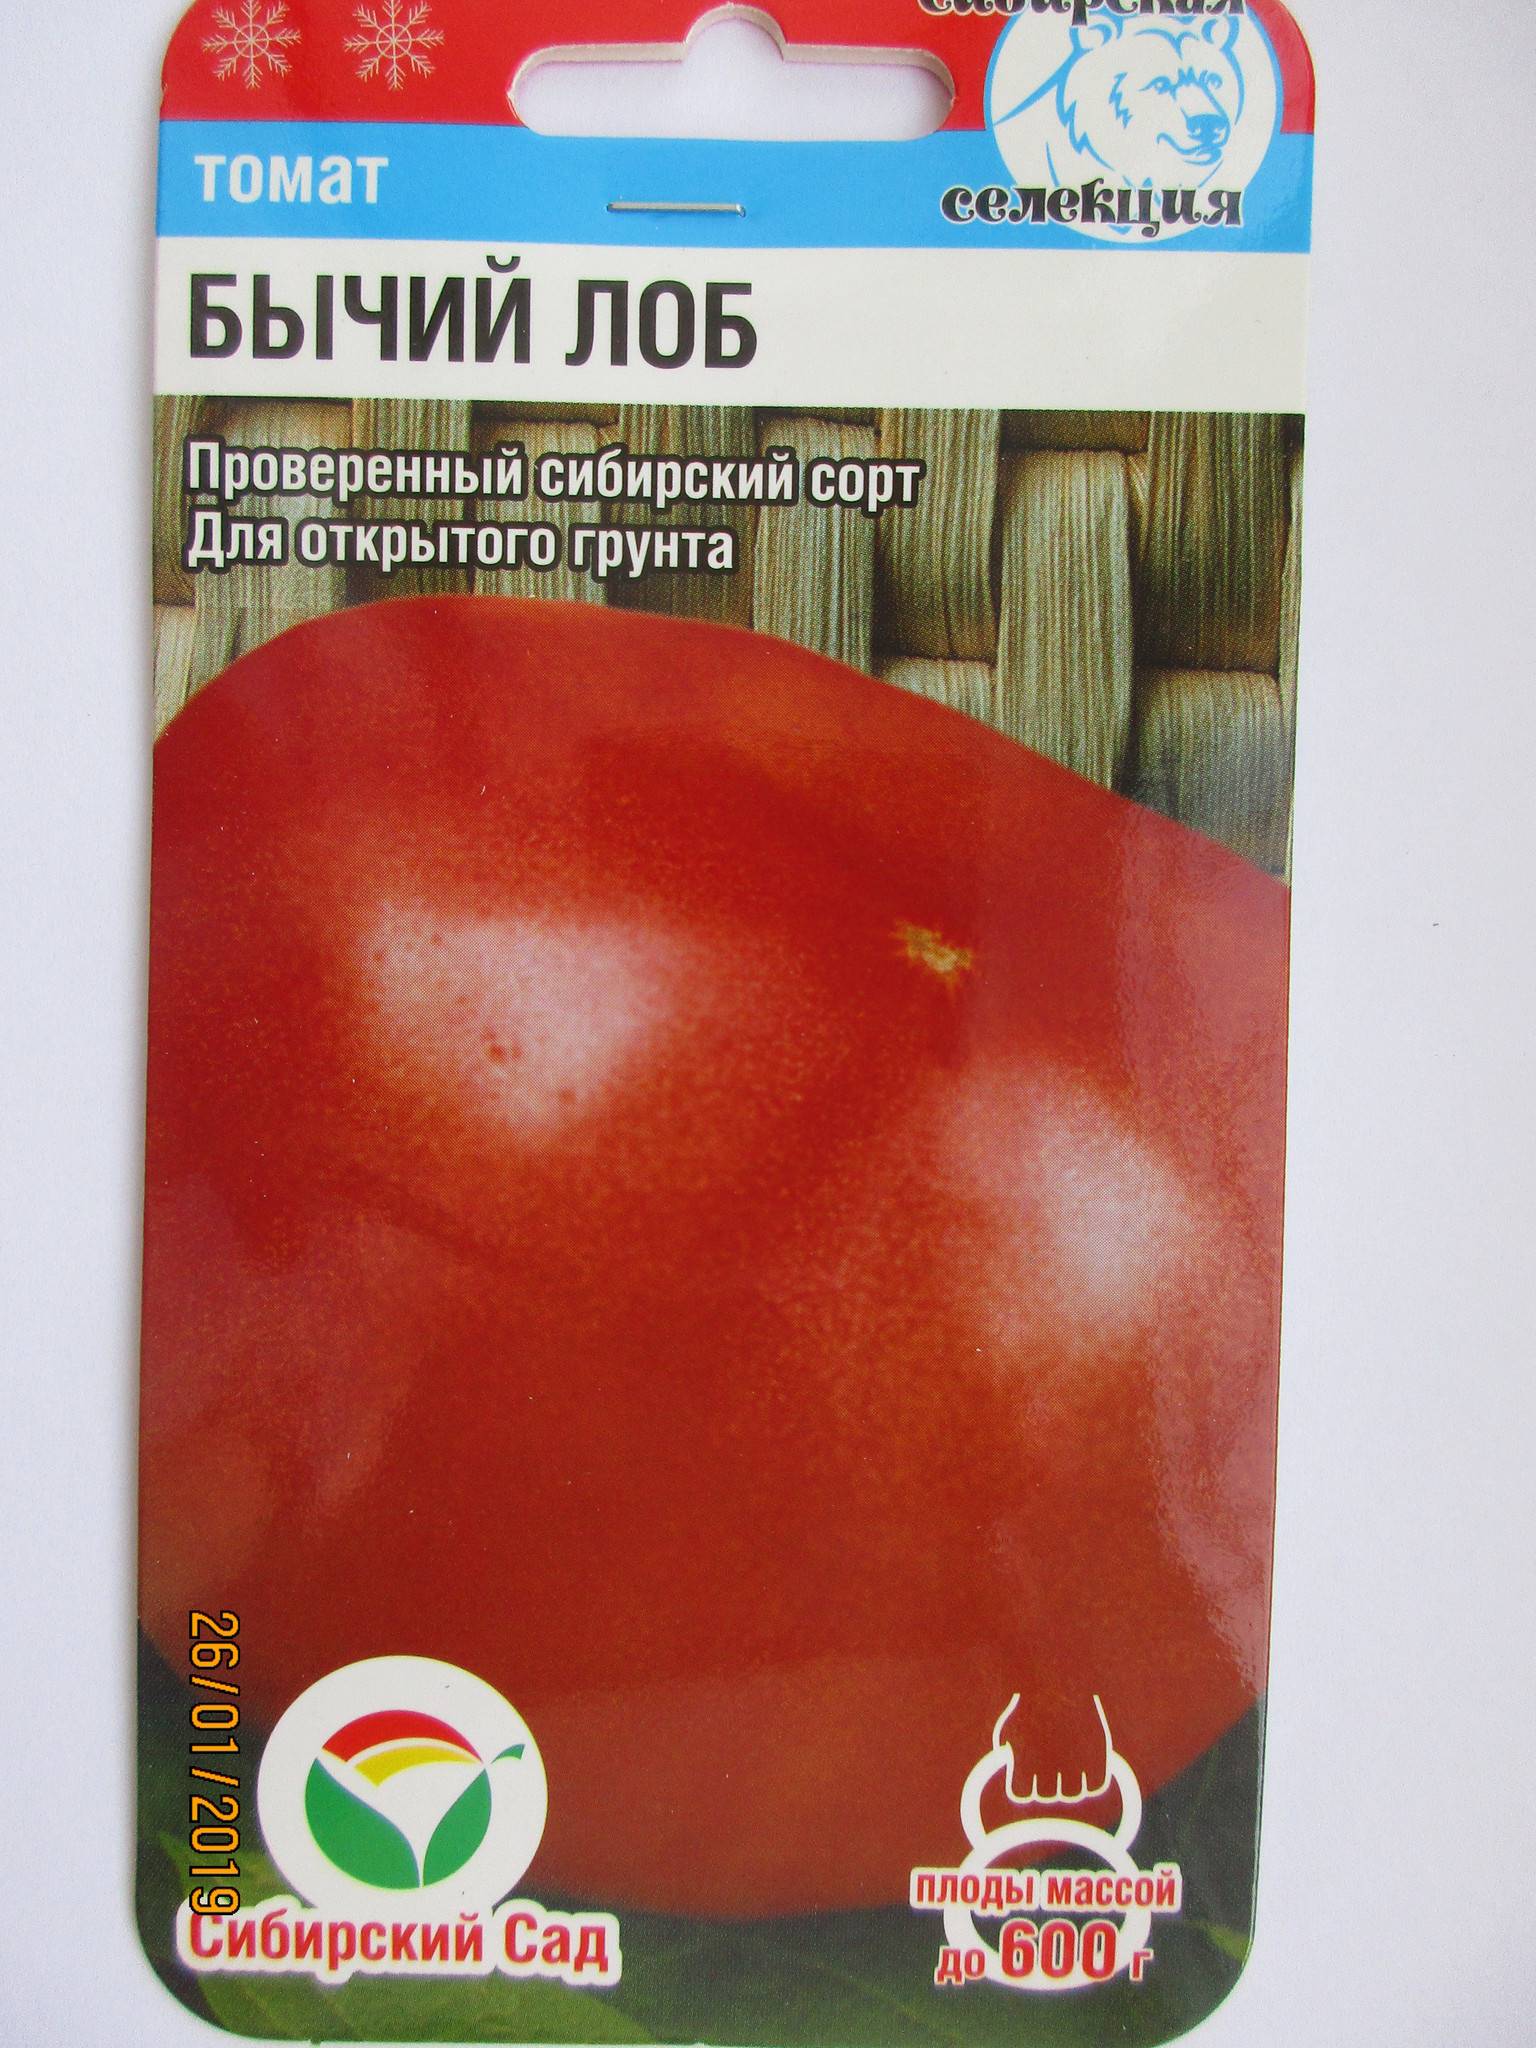 Описание томата Бычий лоб, выращивание и уход за растением